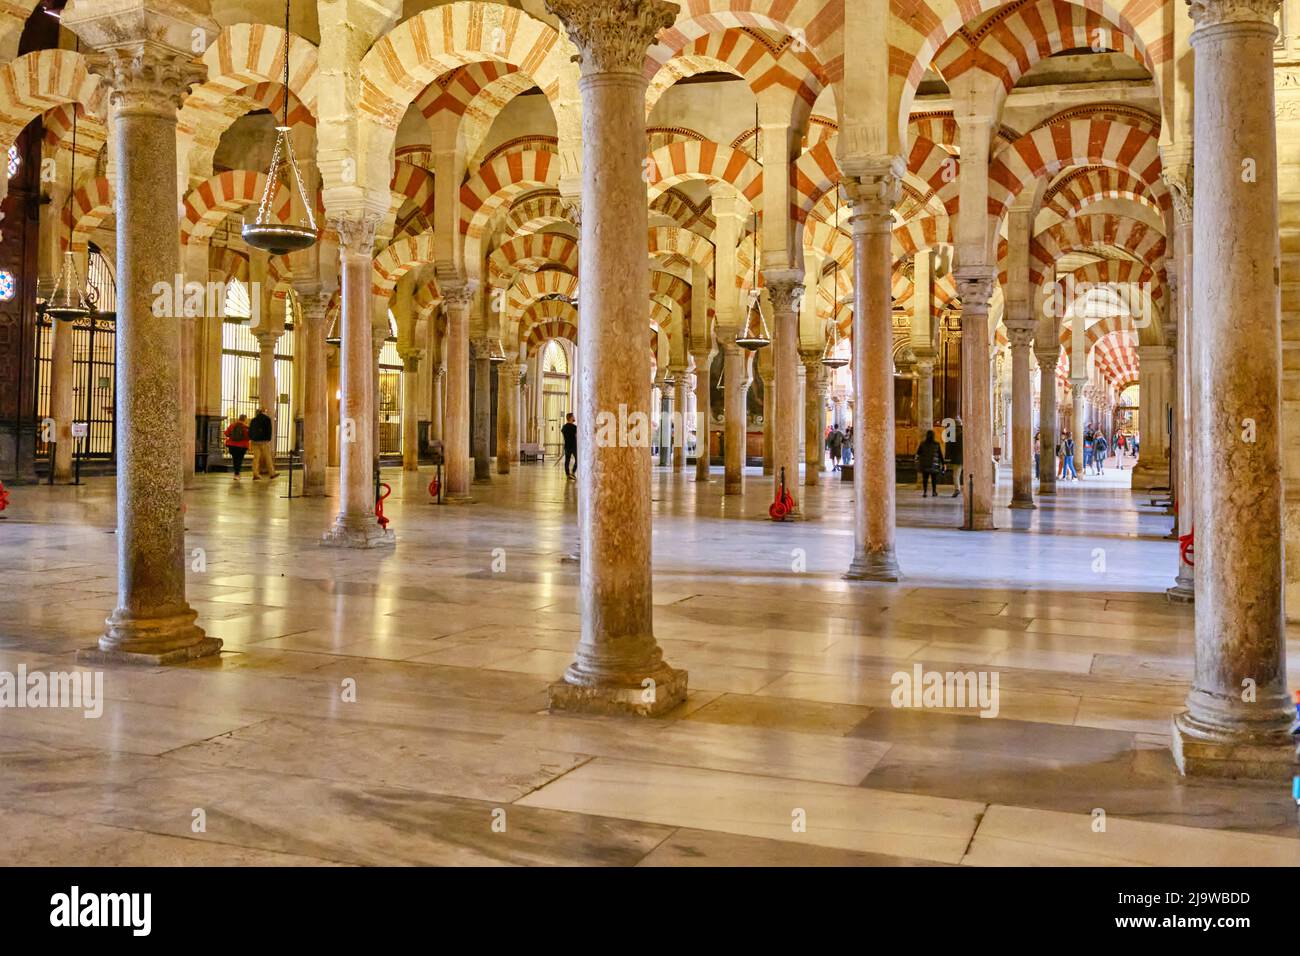 Intérieur de la Mezquita-Catedral (Mosquée-Cathédrale) de Cordoue, datant du 8th siècle A.D., un site classé au patrimoine mondial de l'UNESCO. Andalousie, Espagne Banque D'Images